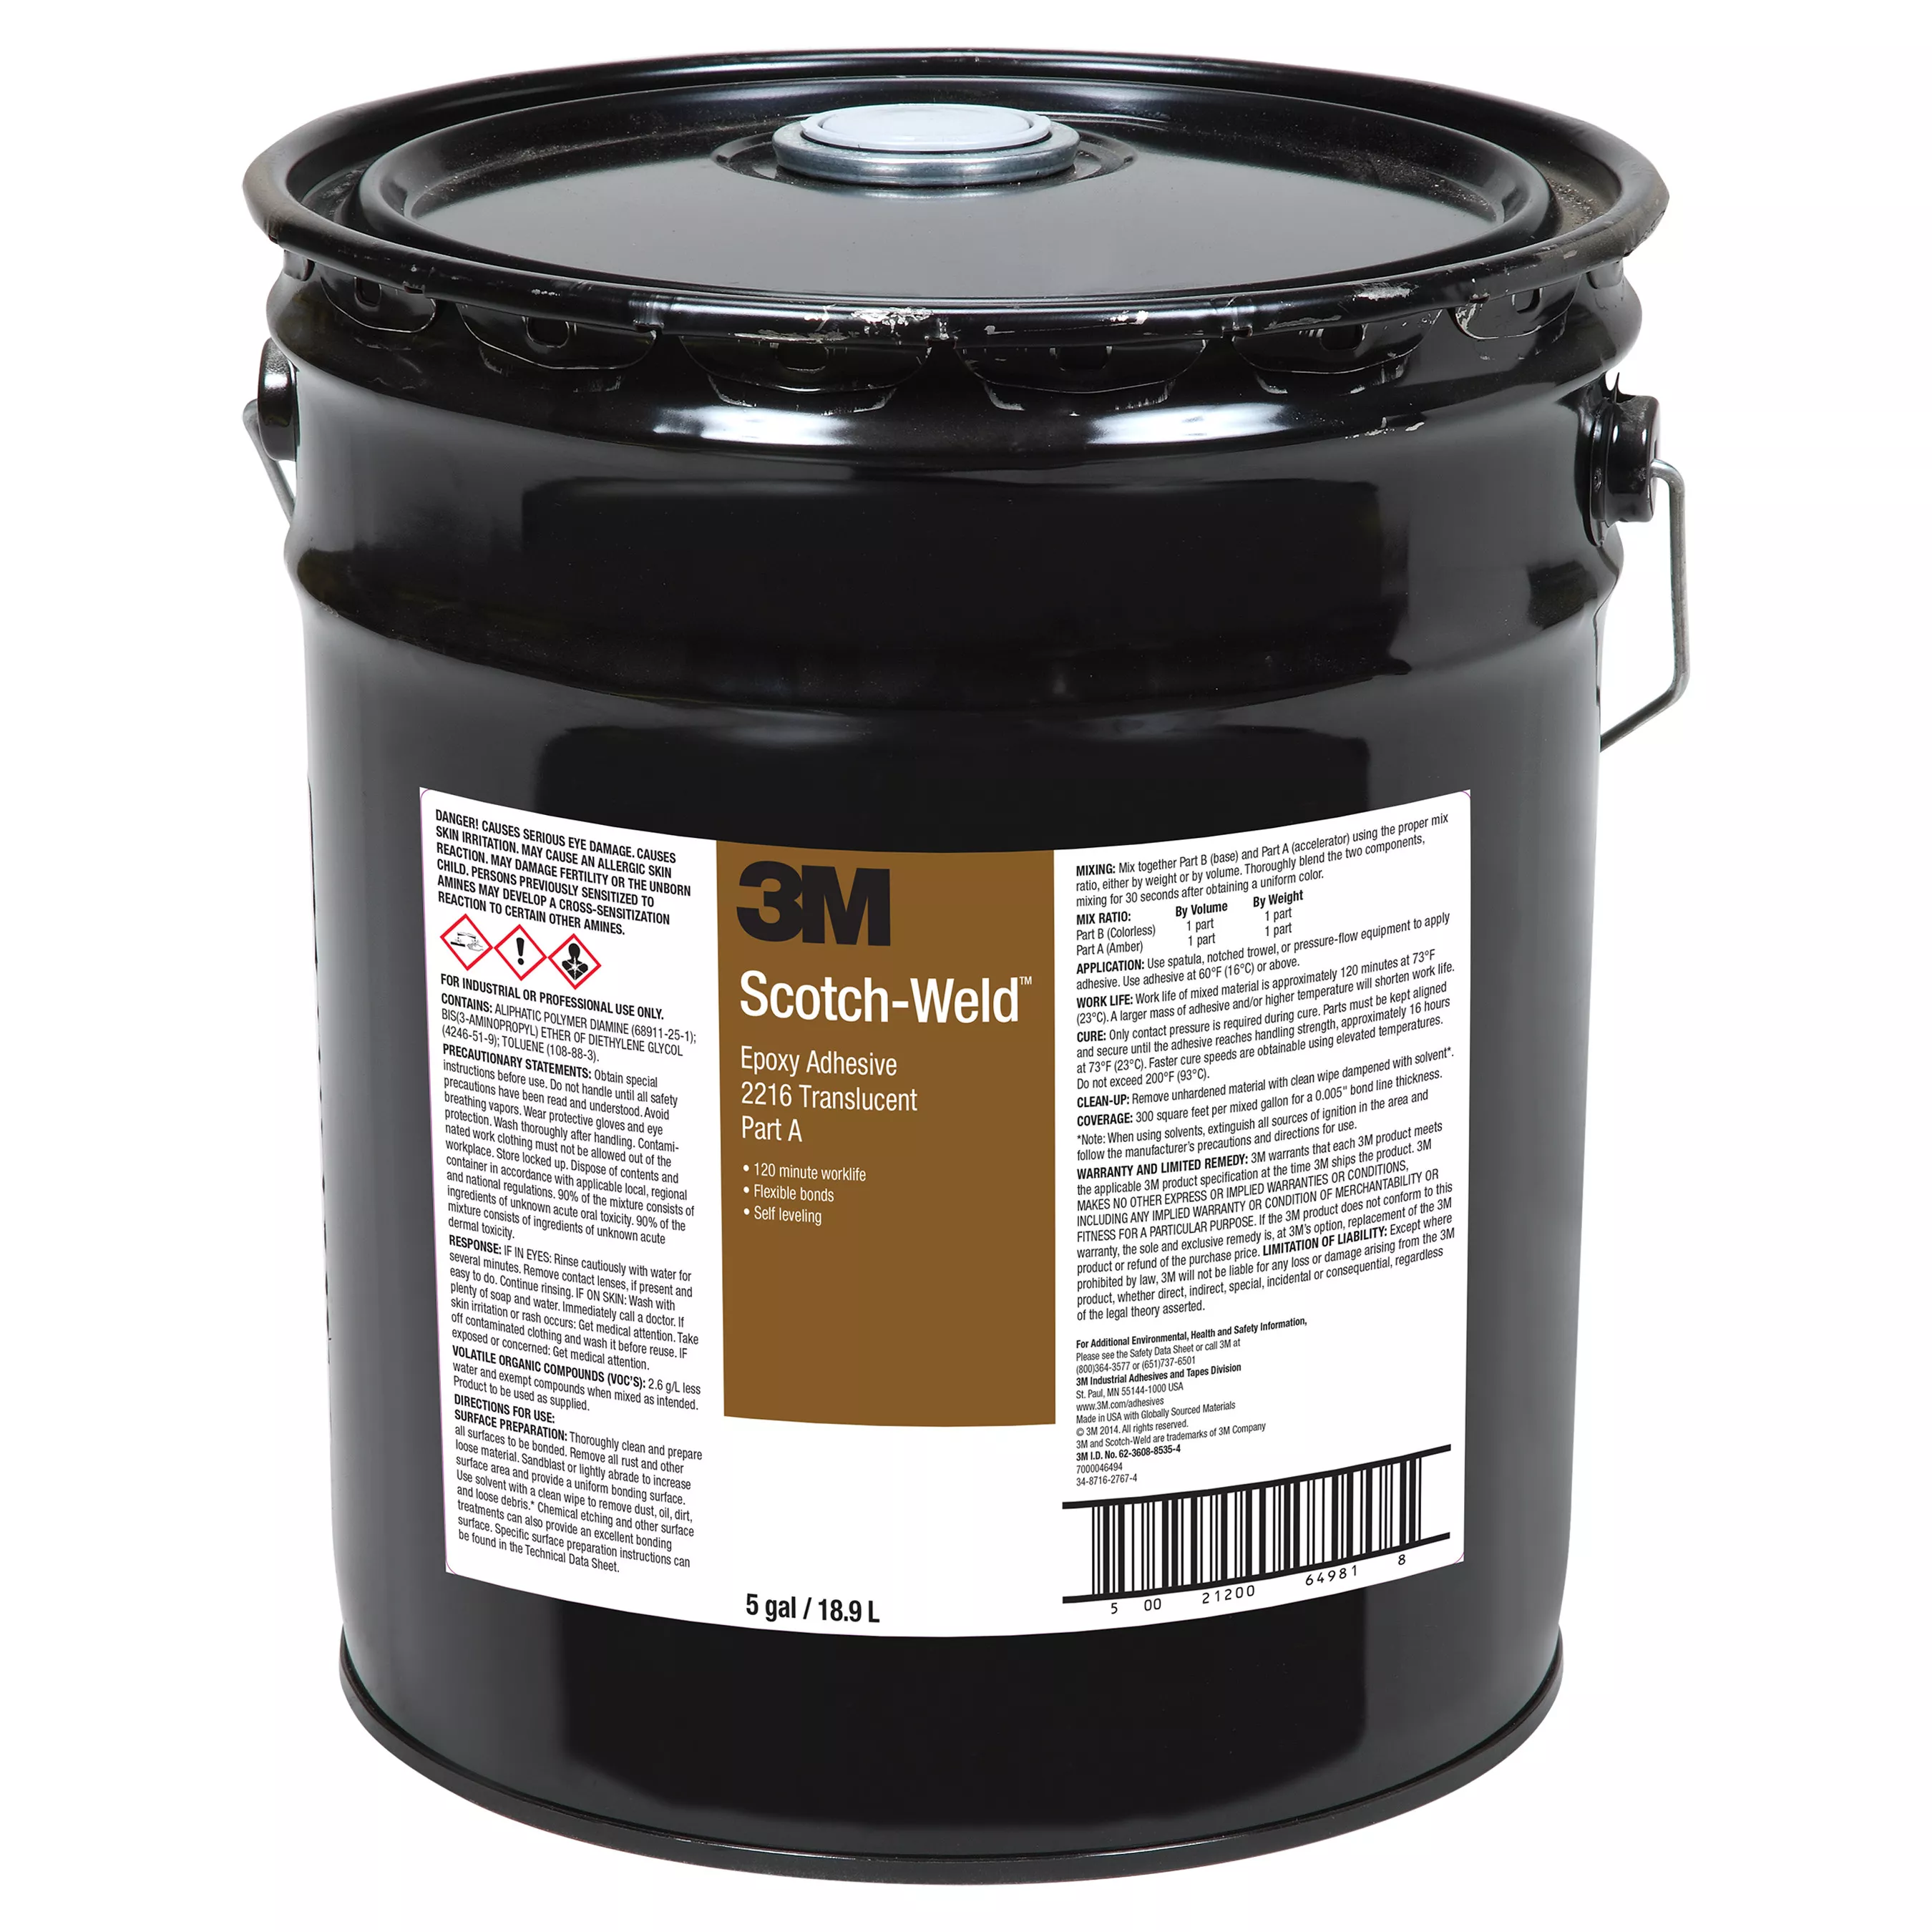 3M™ Scotch-Weld™ Epoxy Adhesive 2216, Translucent, Part A, 5 Gallon Pour
Spout (Pail), 1 Can/Drum